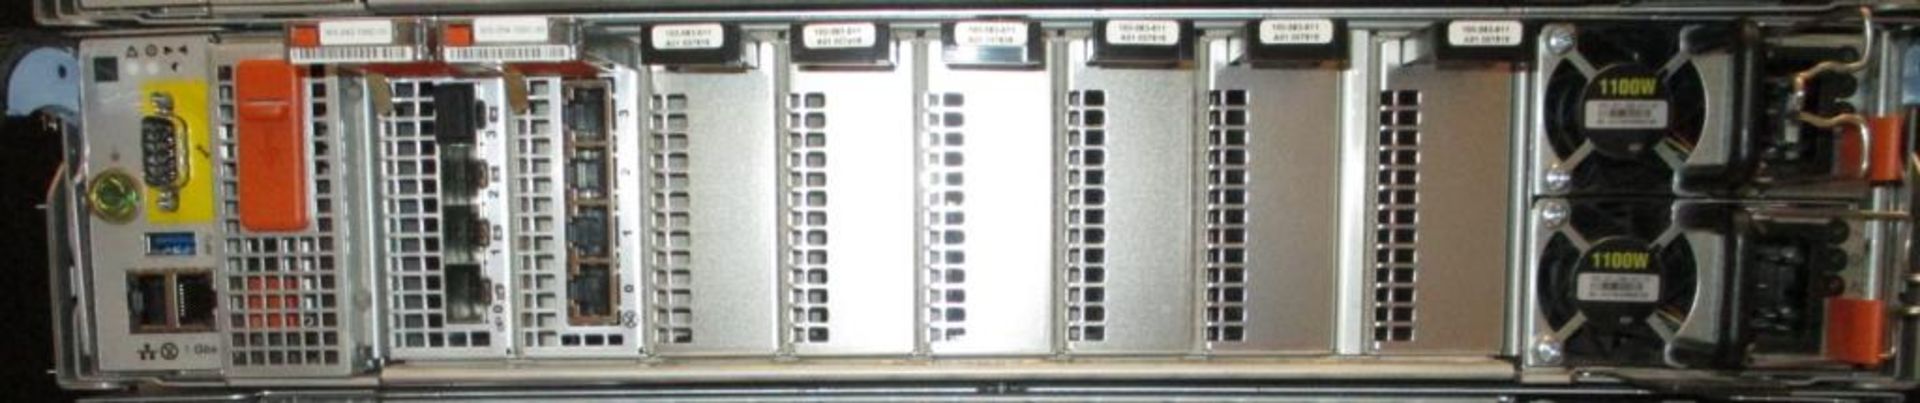 Dell EMC Rack Server - Image 3 of 3